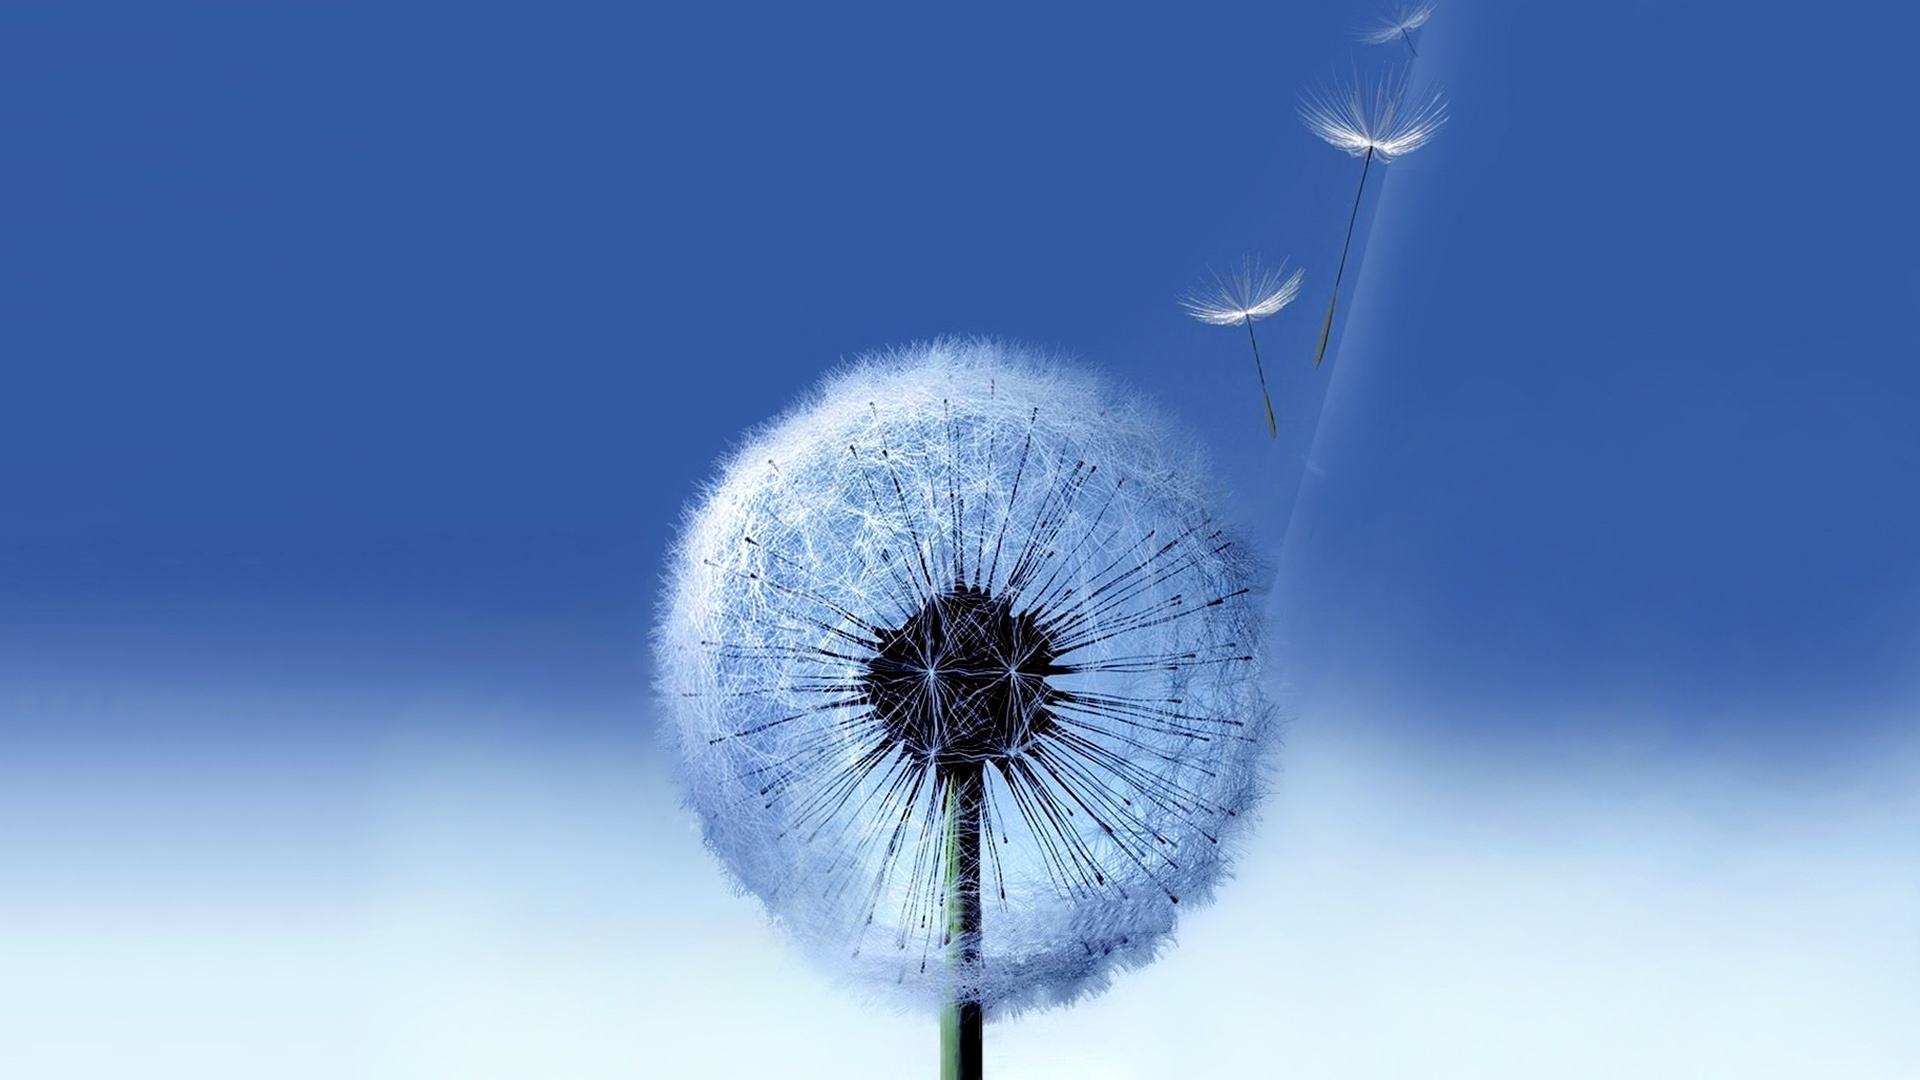 dandelions, plants, blue High Definition image